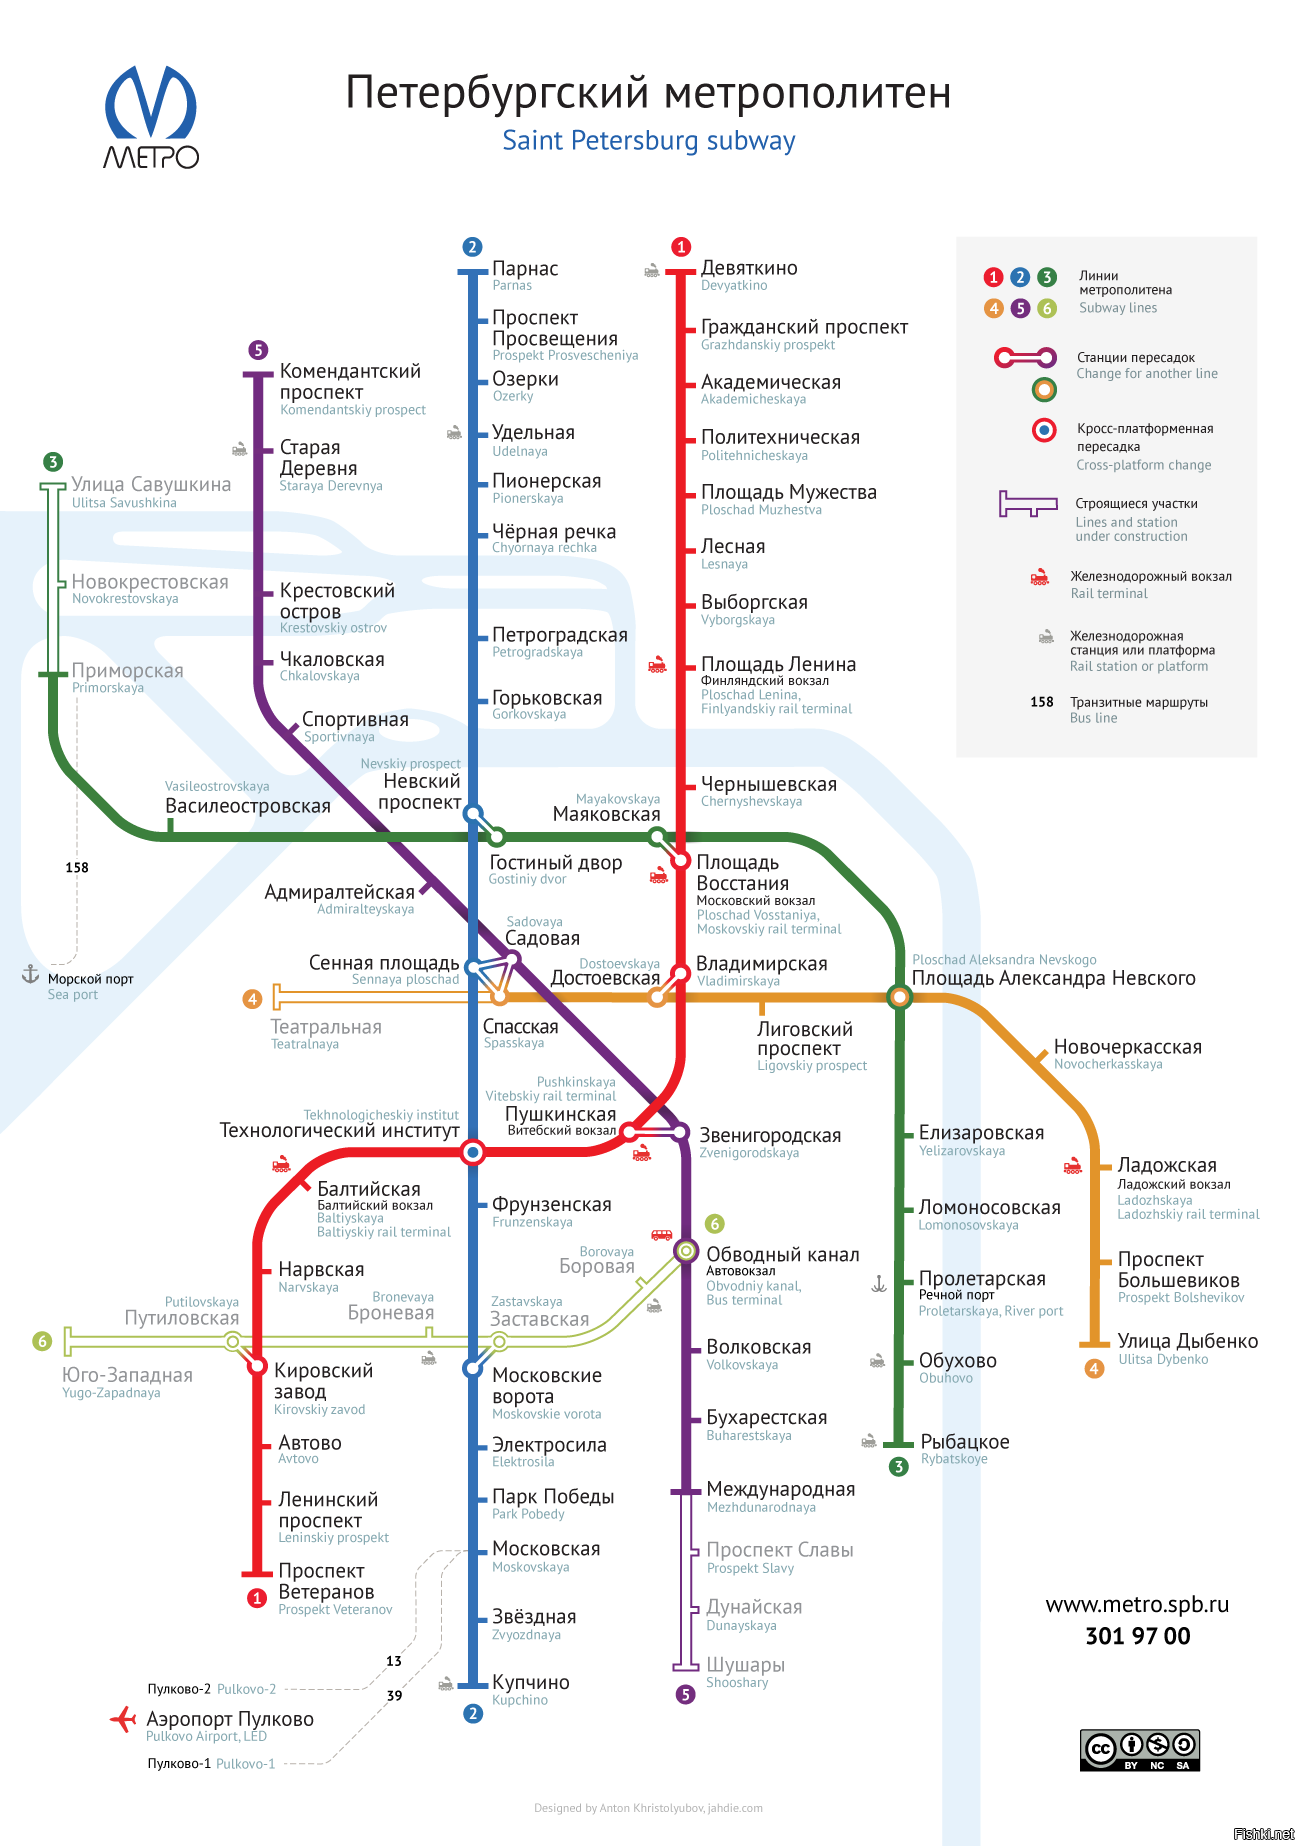 Карта метро санкт петербурга с расчетом времени в пути онлайн бесплатно на русском языке